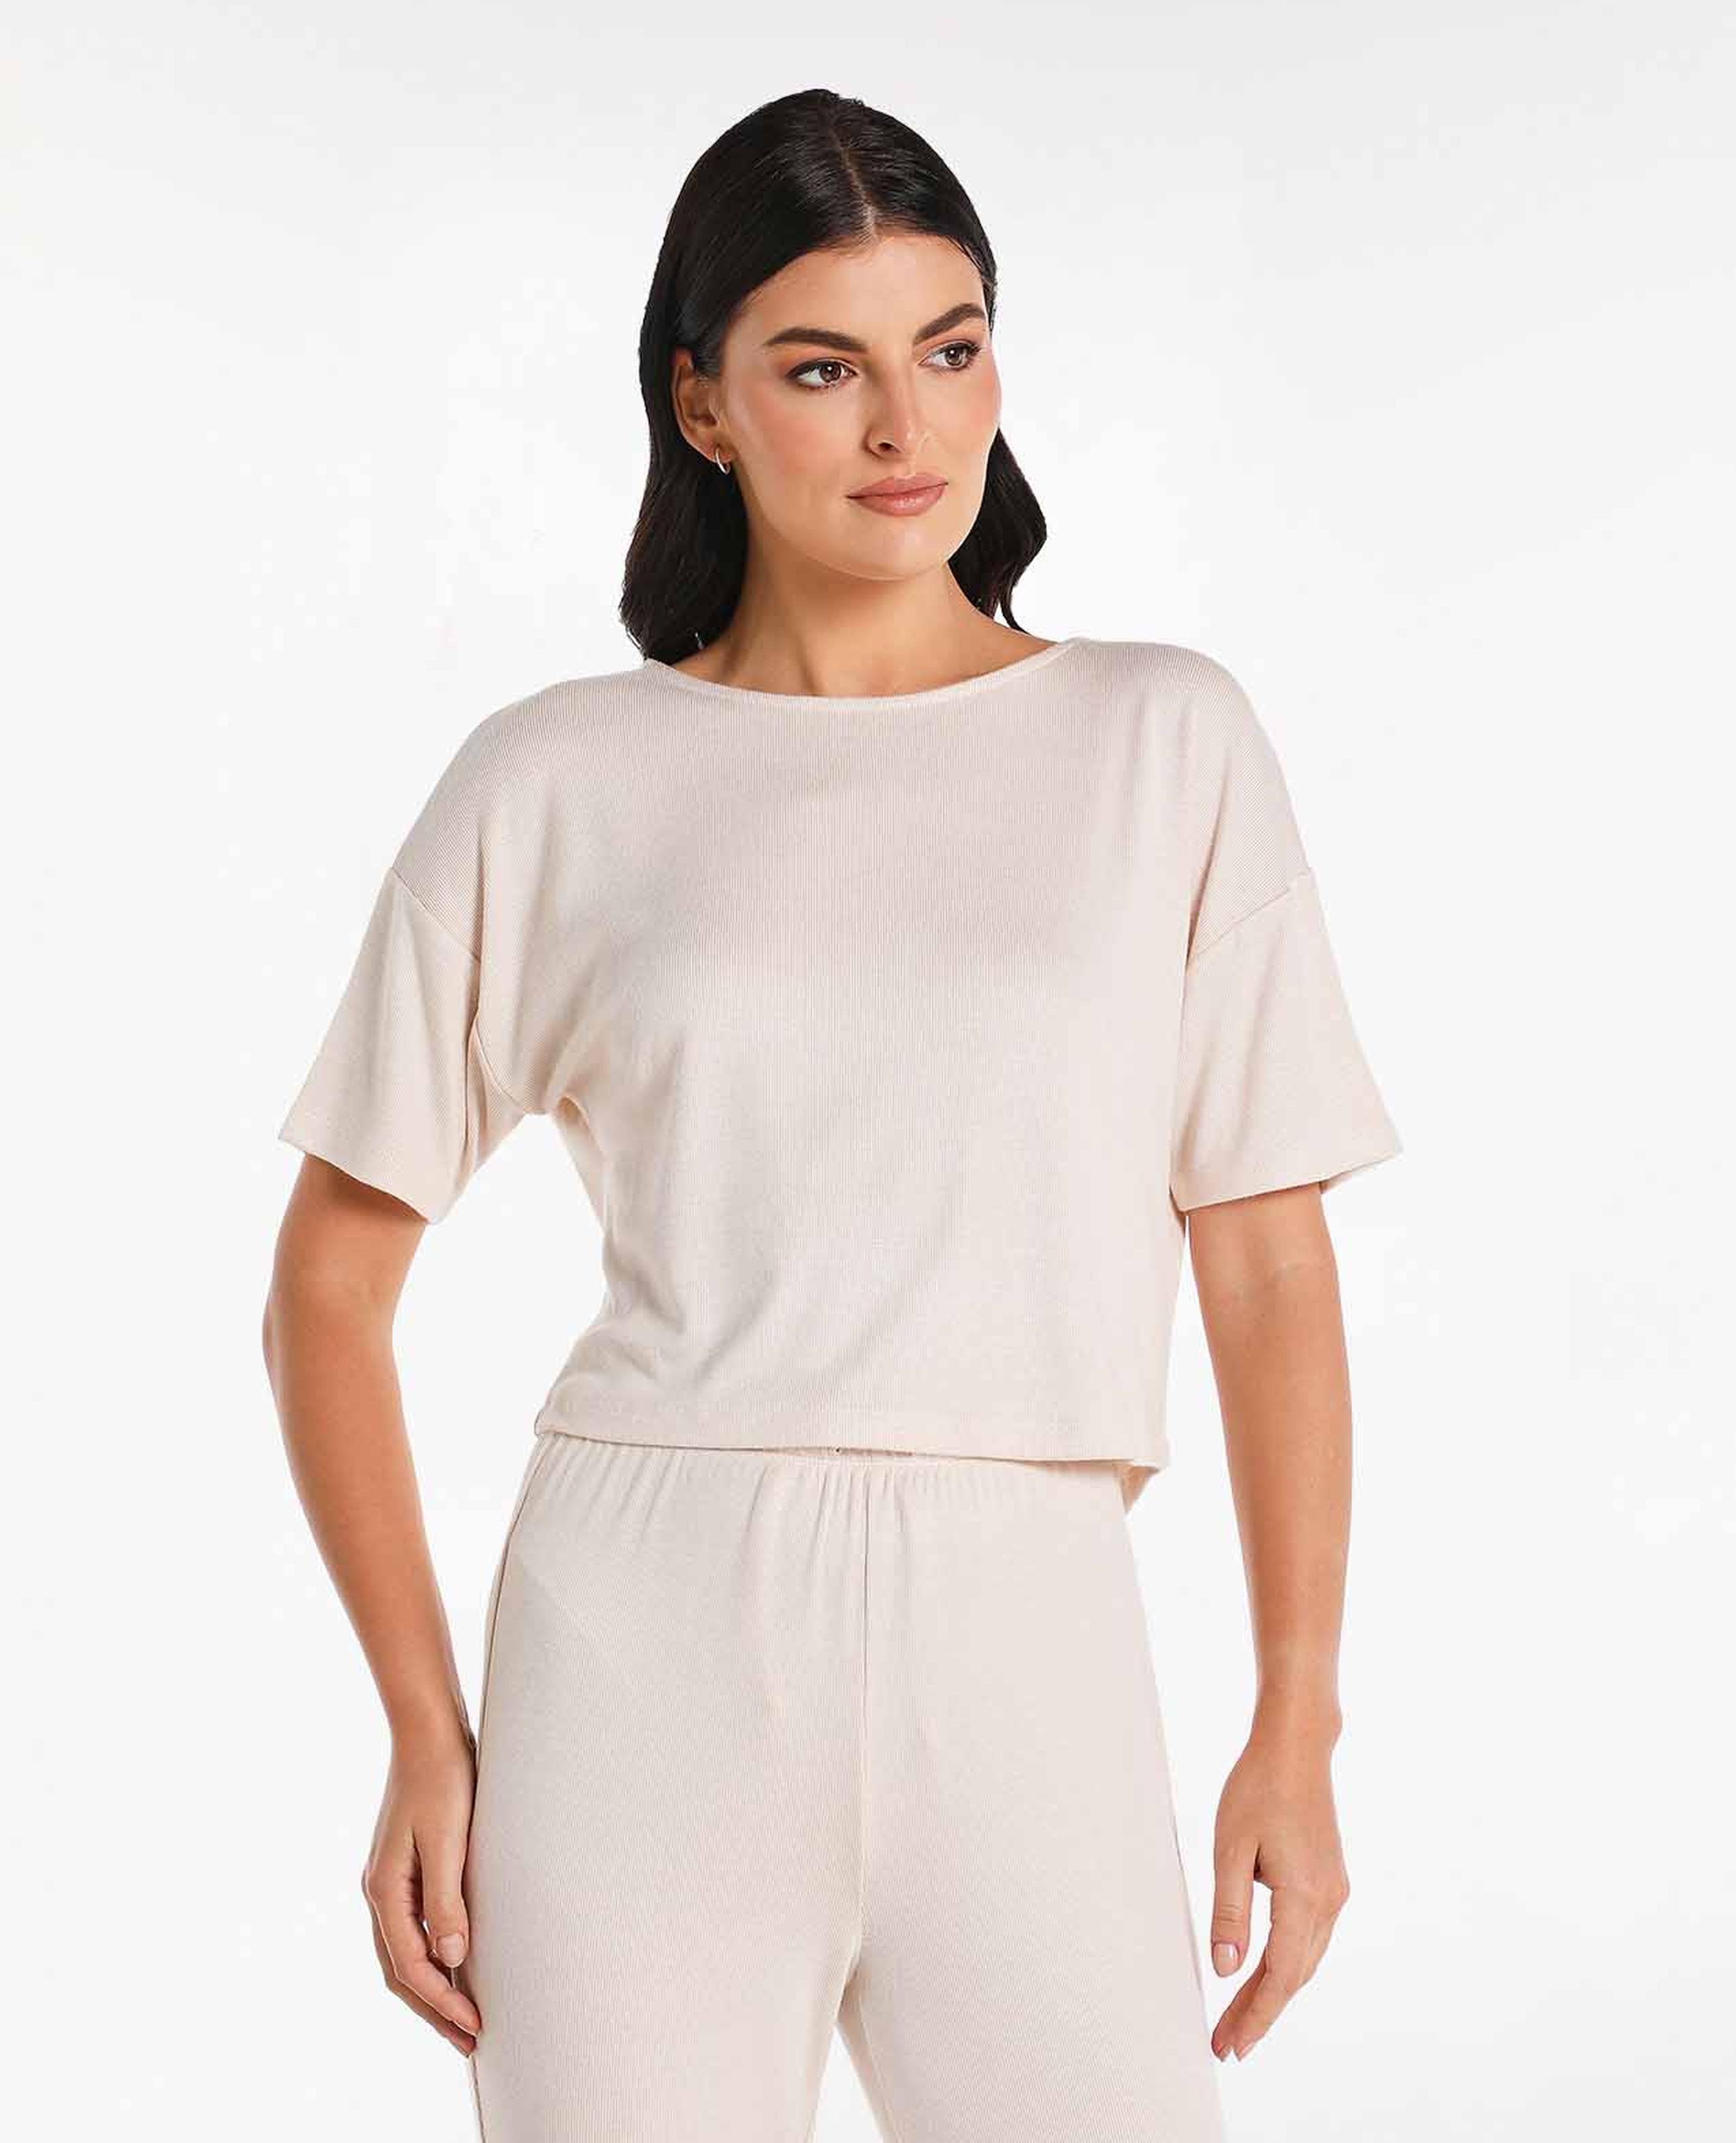 Full Slip For Women Under Dress Adjustable Spaghetti Strap Knee Length Slips  Undergarment Nightwear (Rose, XL) price in UAE,  UAE